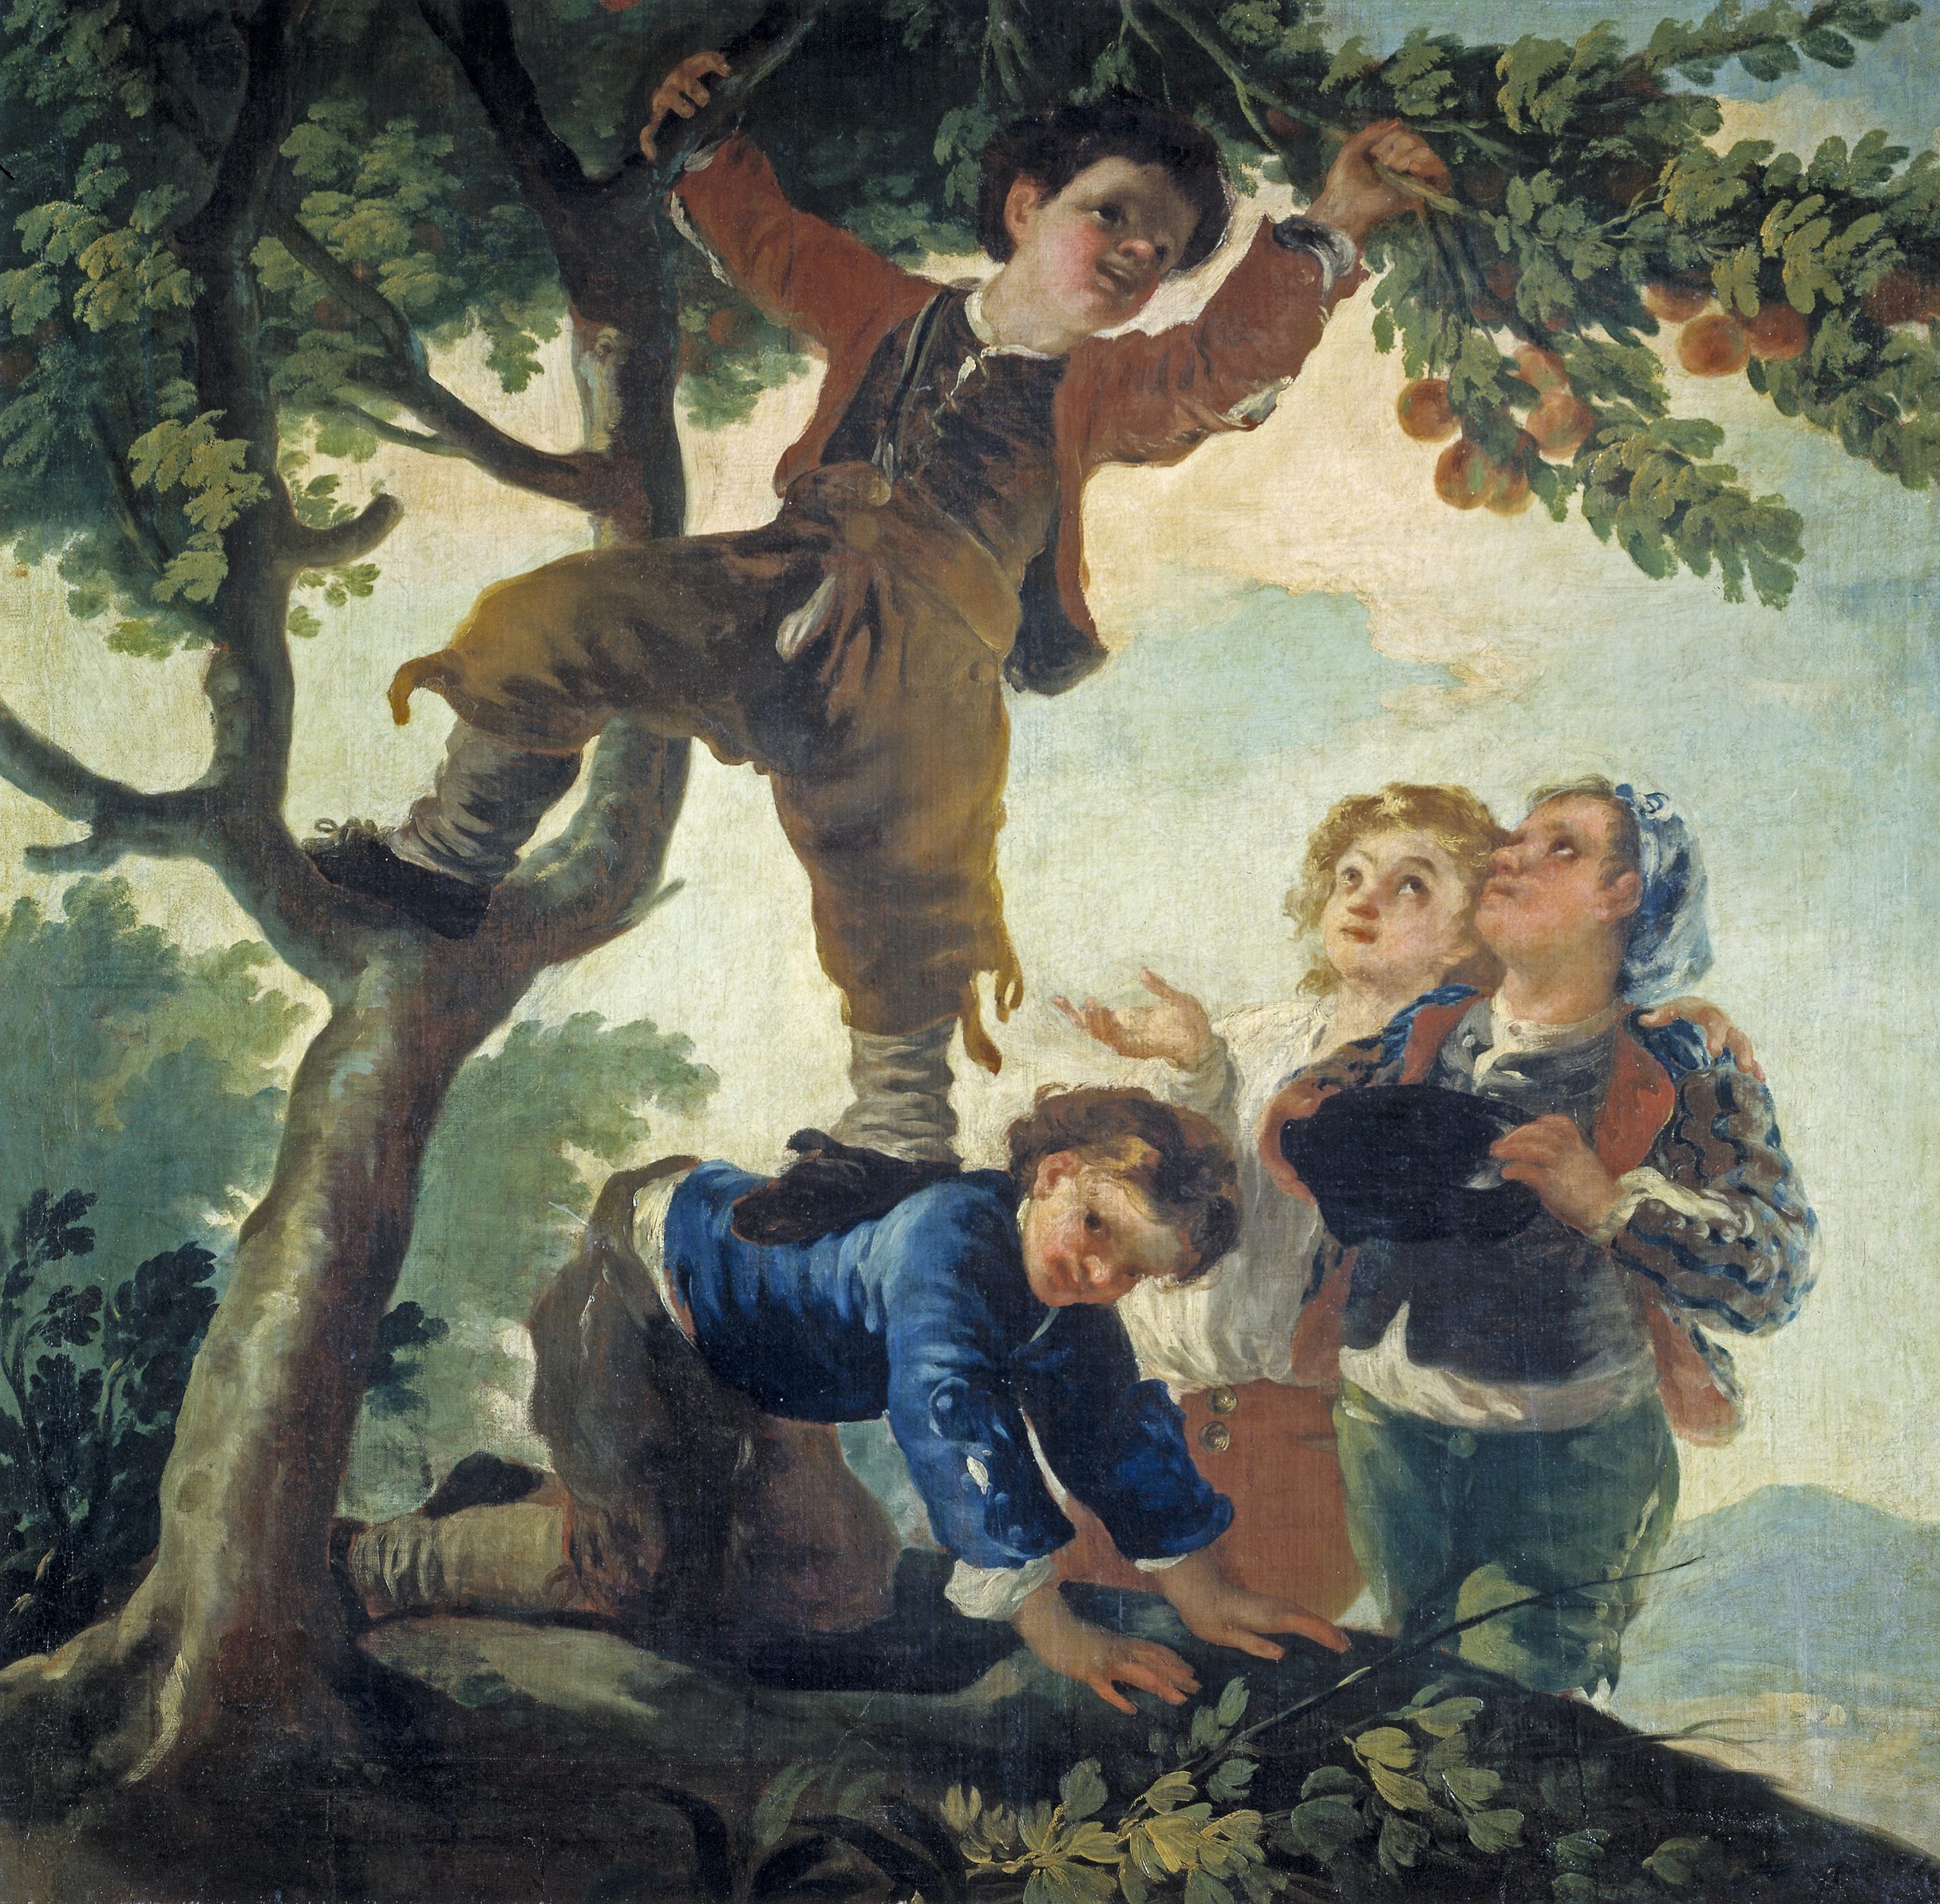 Boys picking fruit